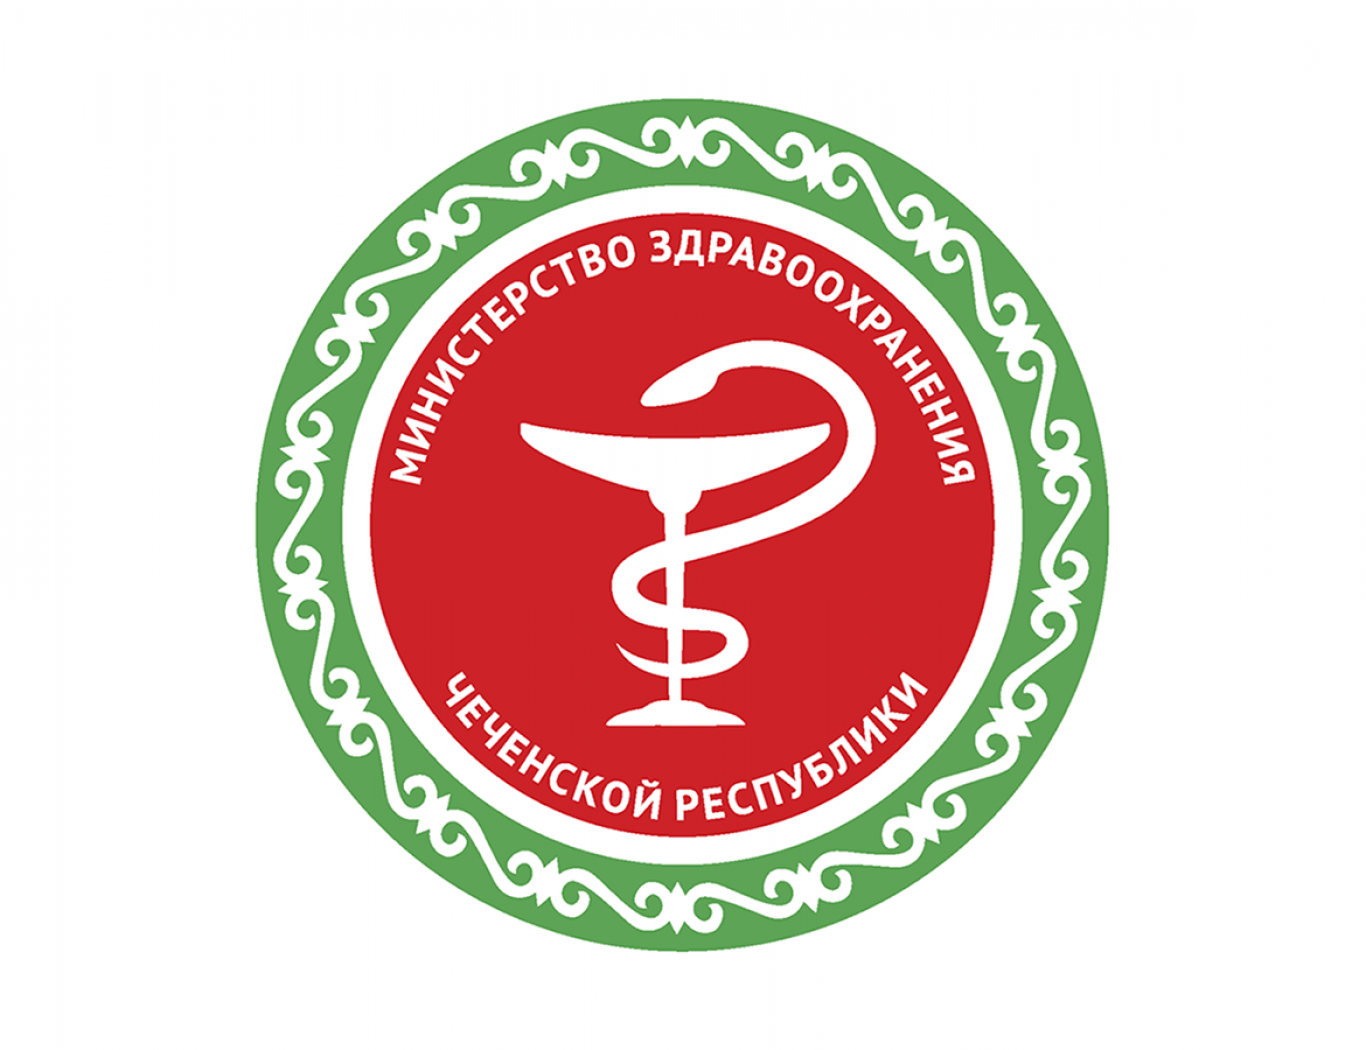 Минздрав чеченской. Министерство здравоохранения Чеченской Республики. Герб Минздрава Чеченской Республике. Логотип здравоохранения Чеченской Республики. Министерство здравоохранения логотип.